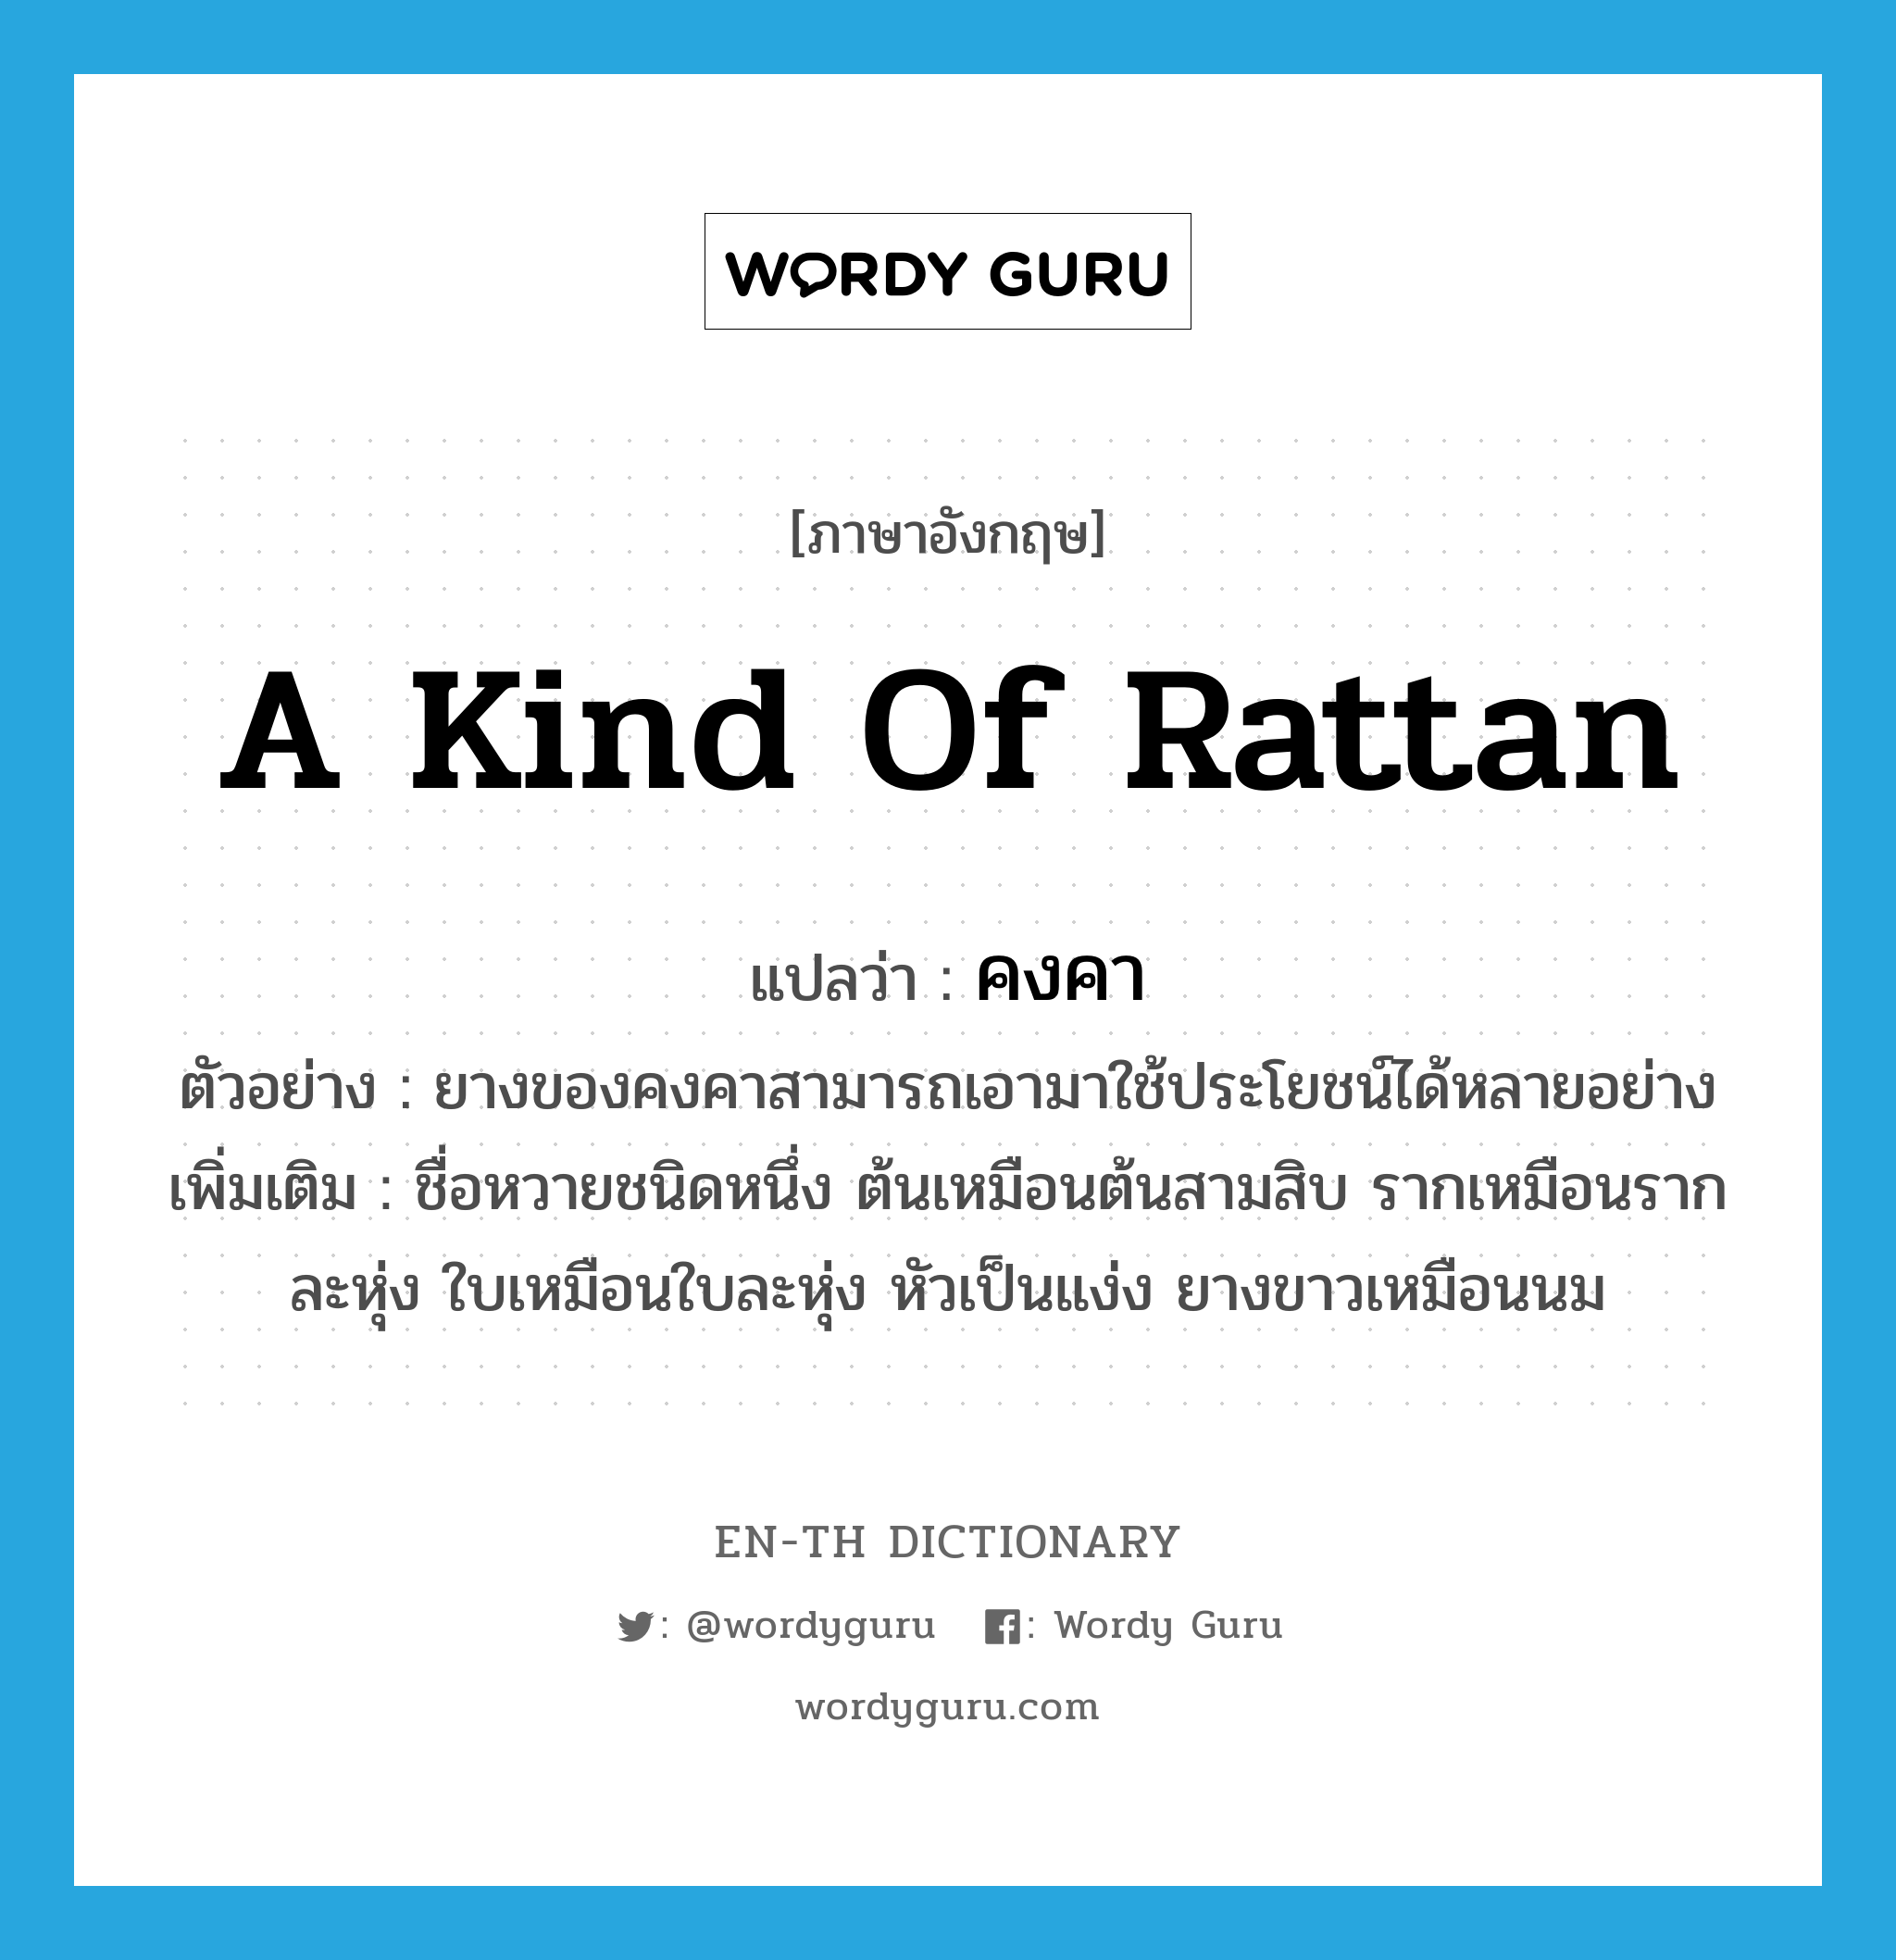 a kind of rattan แปลว่า? คำศัพท์ในกลุ่มประเภท N, คำศัพท์ภาษาอังกฤษ a kind of rattan แปลว่า คงคา ประเภท N ตัวอย่าง ยางของคงคาสามารถเอามาใช้ประโยชน์ได้หลายอย่าง เพิ่มเติม ชื่อหวายชนิดหนึ่ง ต้นเหมือนต้นสามสิบ รากเหมือนรากละหุ่ง ใบเหมือนใบละหุ่ง หัวเป็นแง่ง ยางขาวเหมือนนม หมวด N